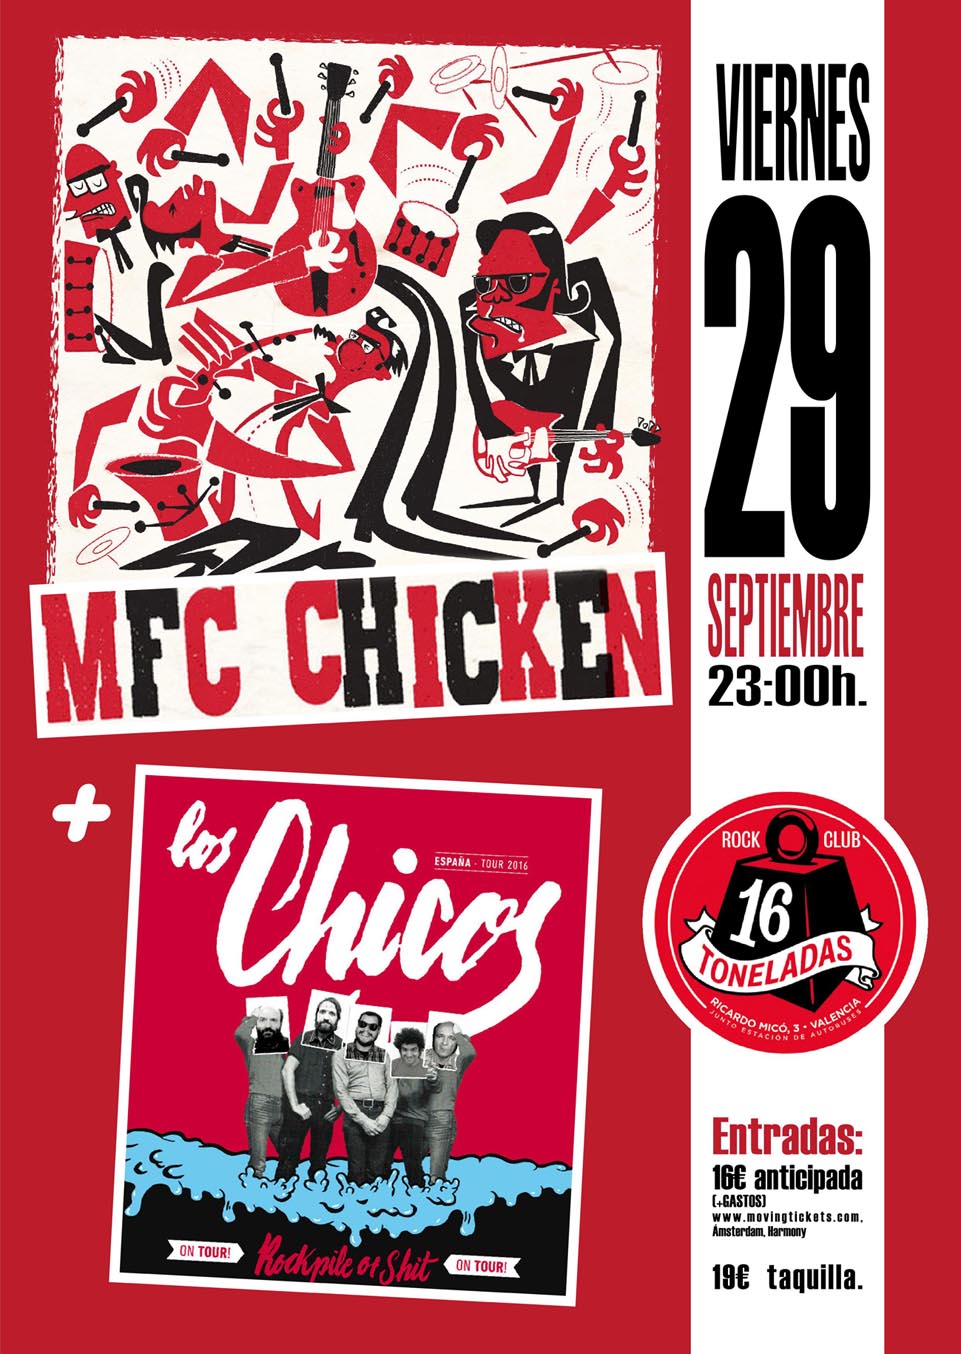 16t-mfc-chicken-cartel-web